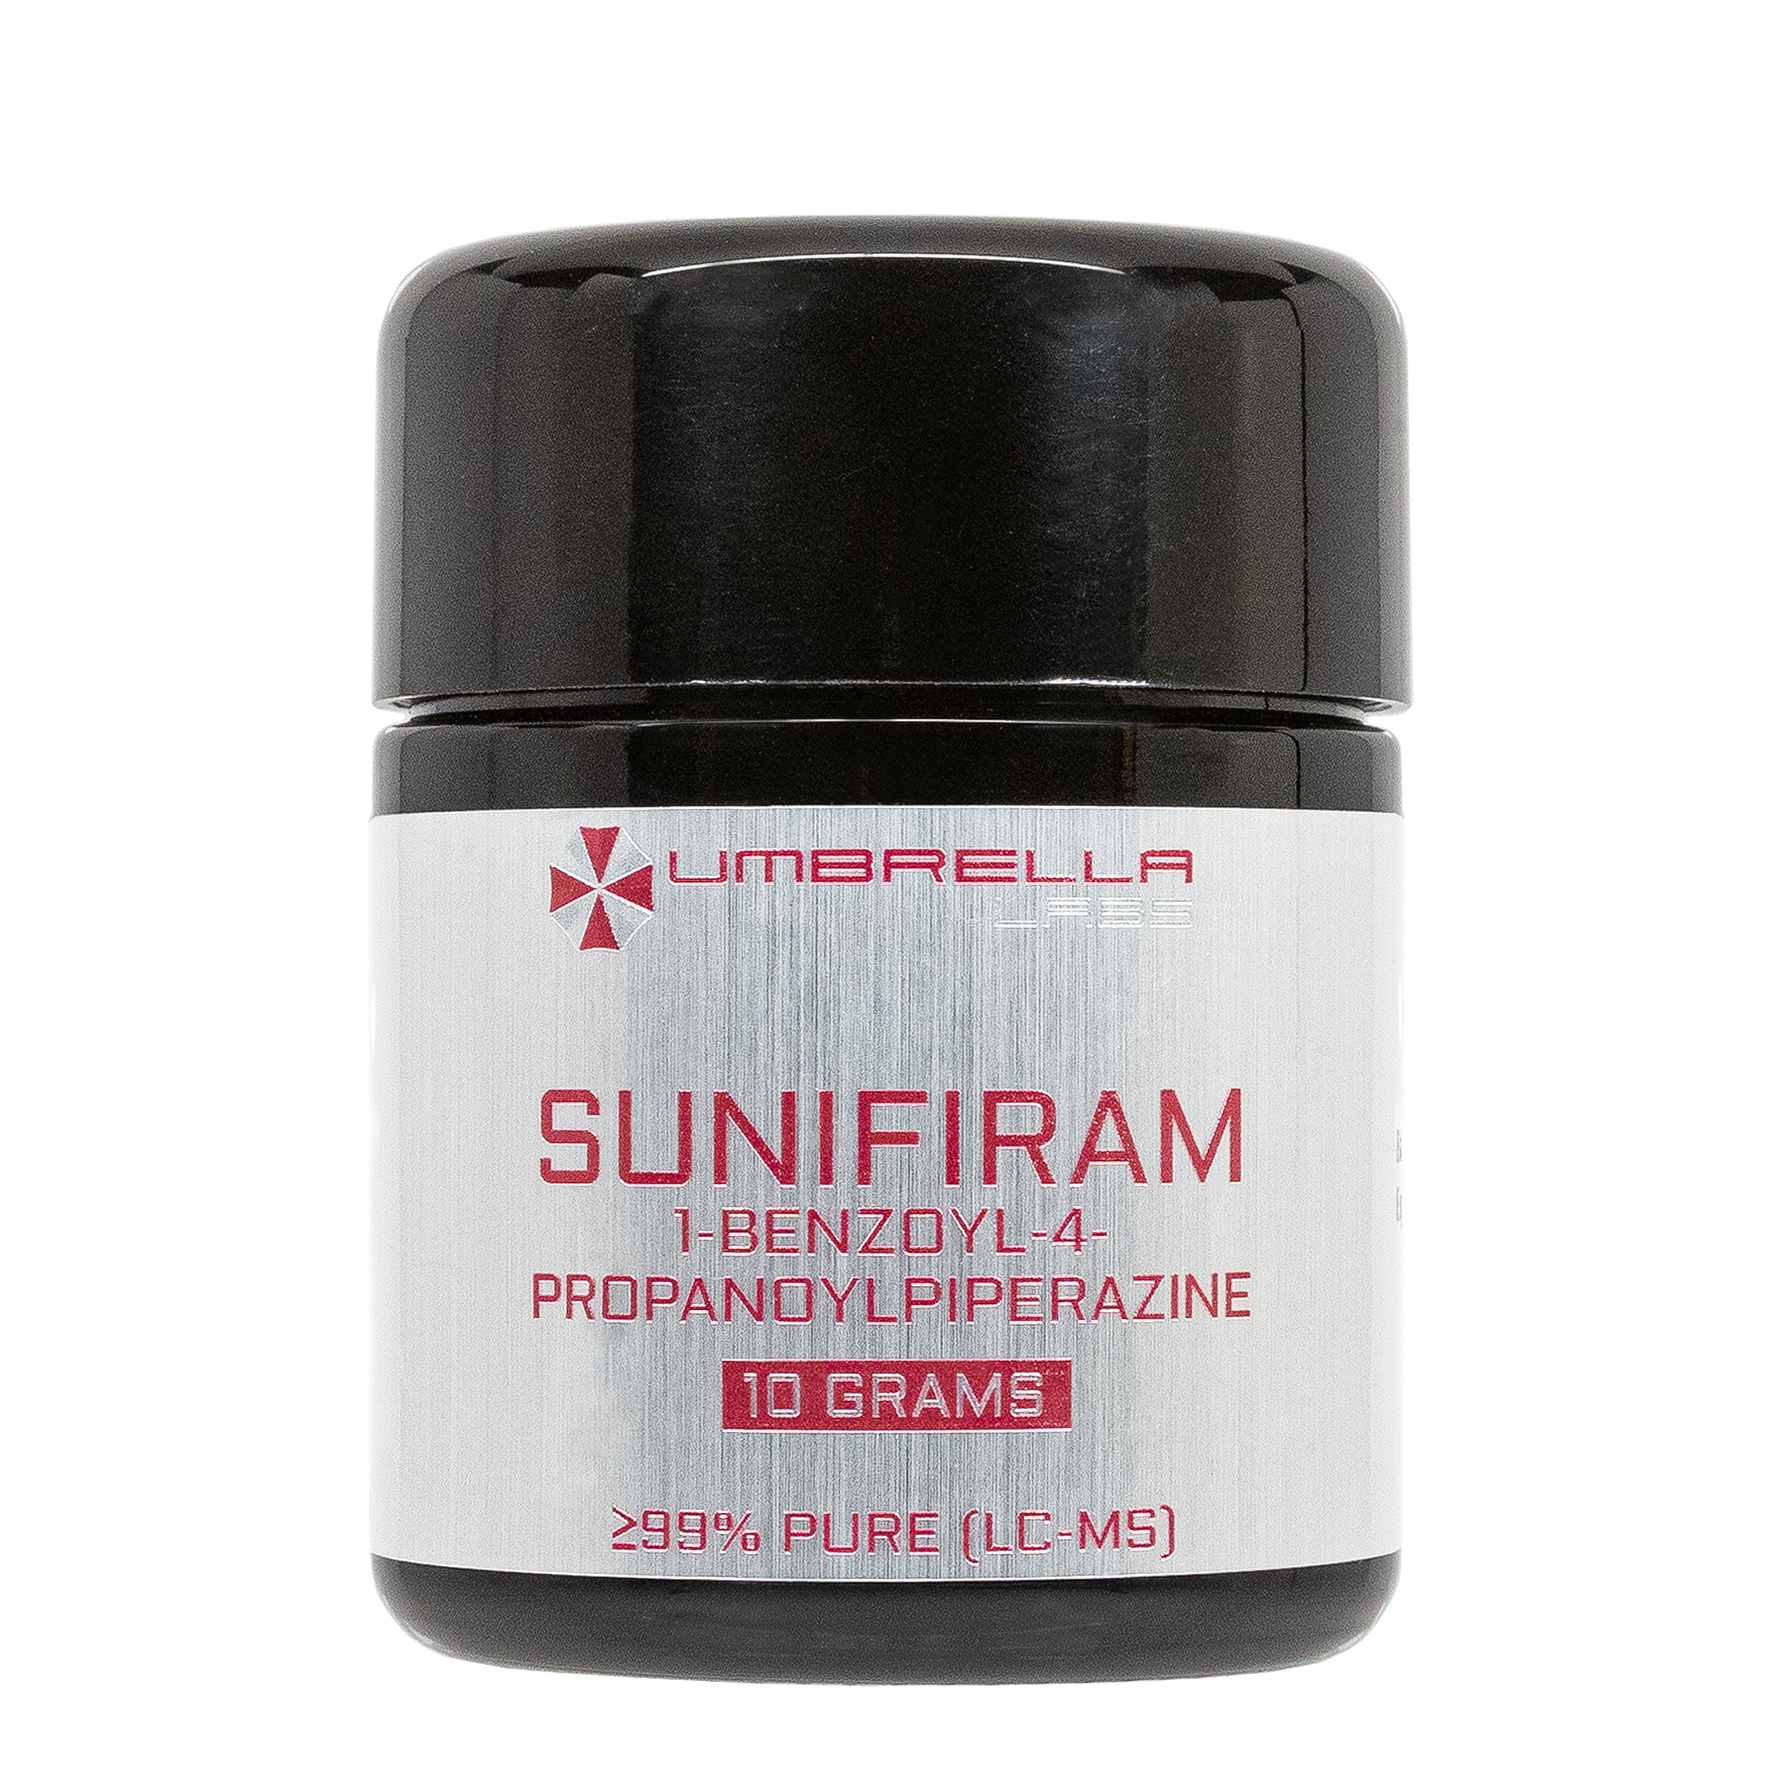 sunifiram (10 grams)